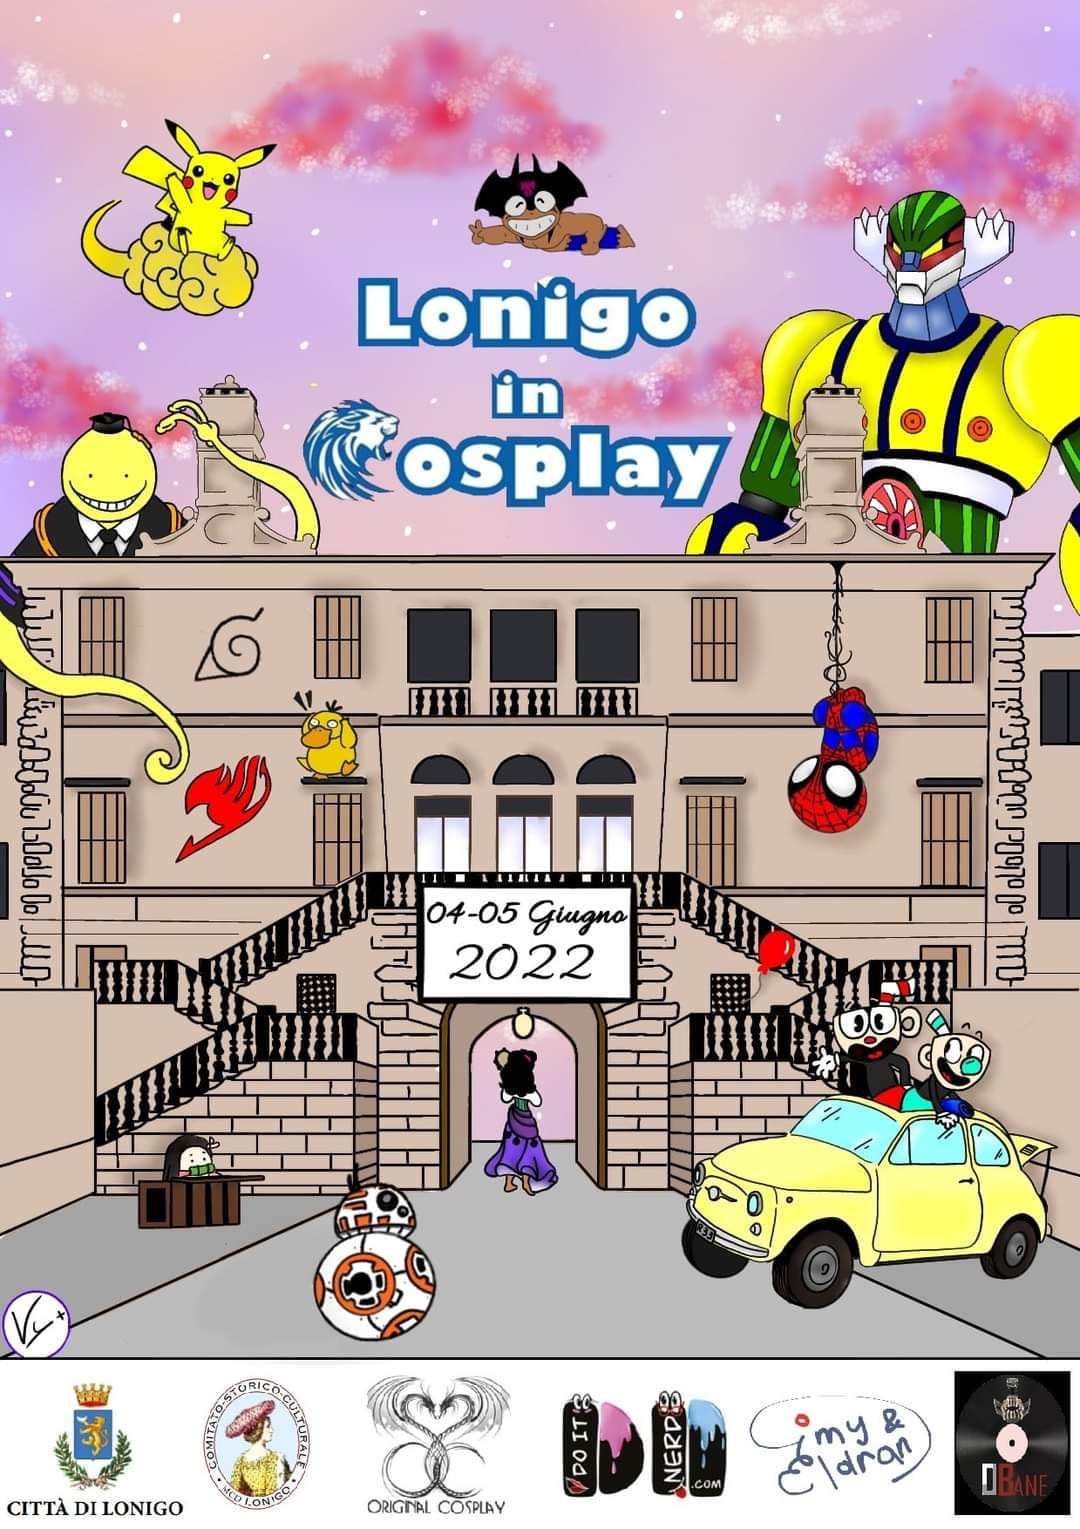 Lonigo in Cosplay:  4 e 5 giugno 2022